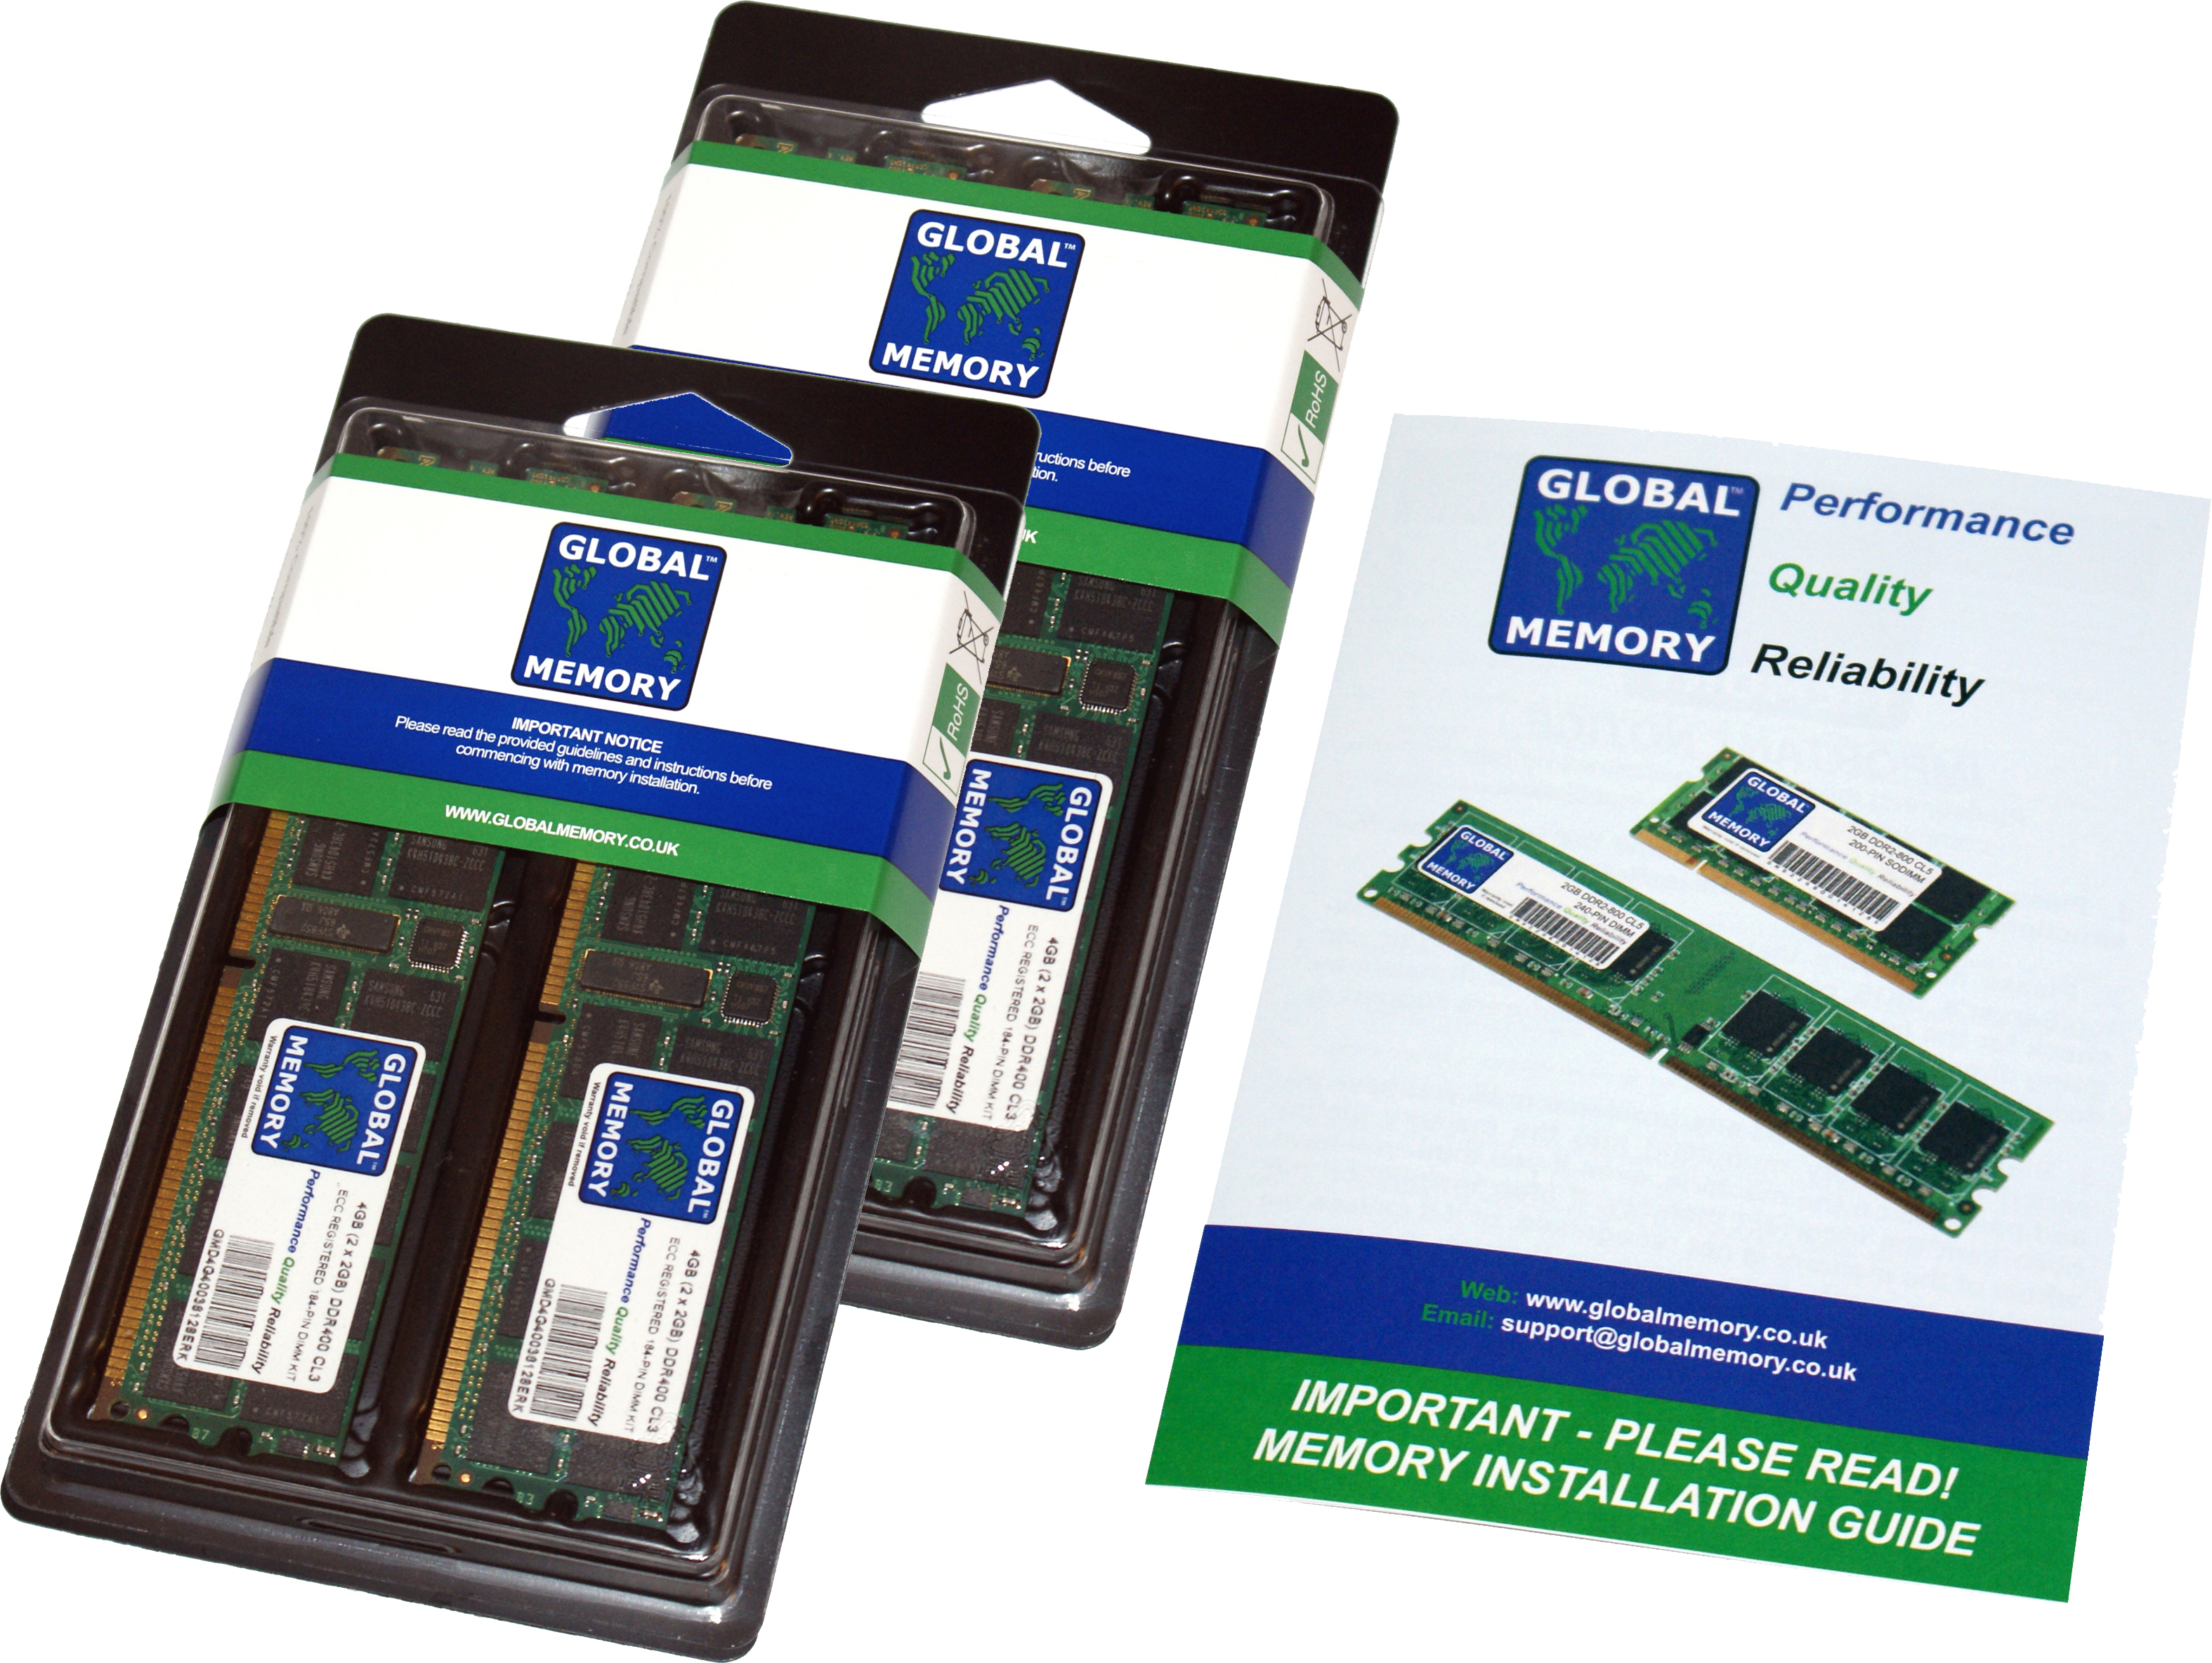 256GB (4 x 64GB) DDR4 2666MHz PC4-21300 288-PIN LOAD REDUCED ECC REGISTERED DIMM (LRDIMM) MEMORY RAM KIT FOR HEWLETT-PACKARD SERVERS/WORKSTATIONS (16 RANK KIT CHIPKILL)